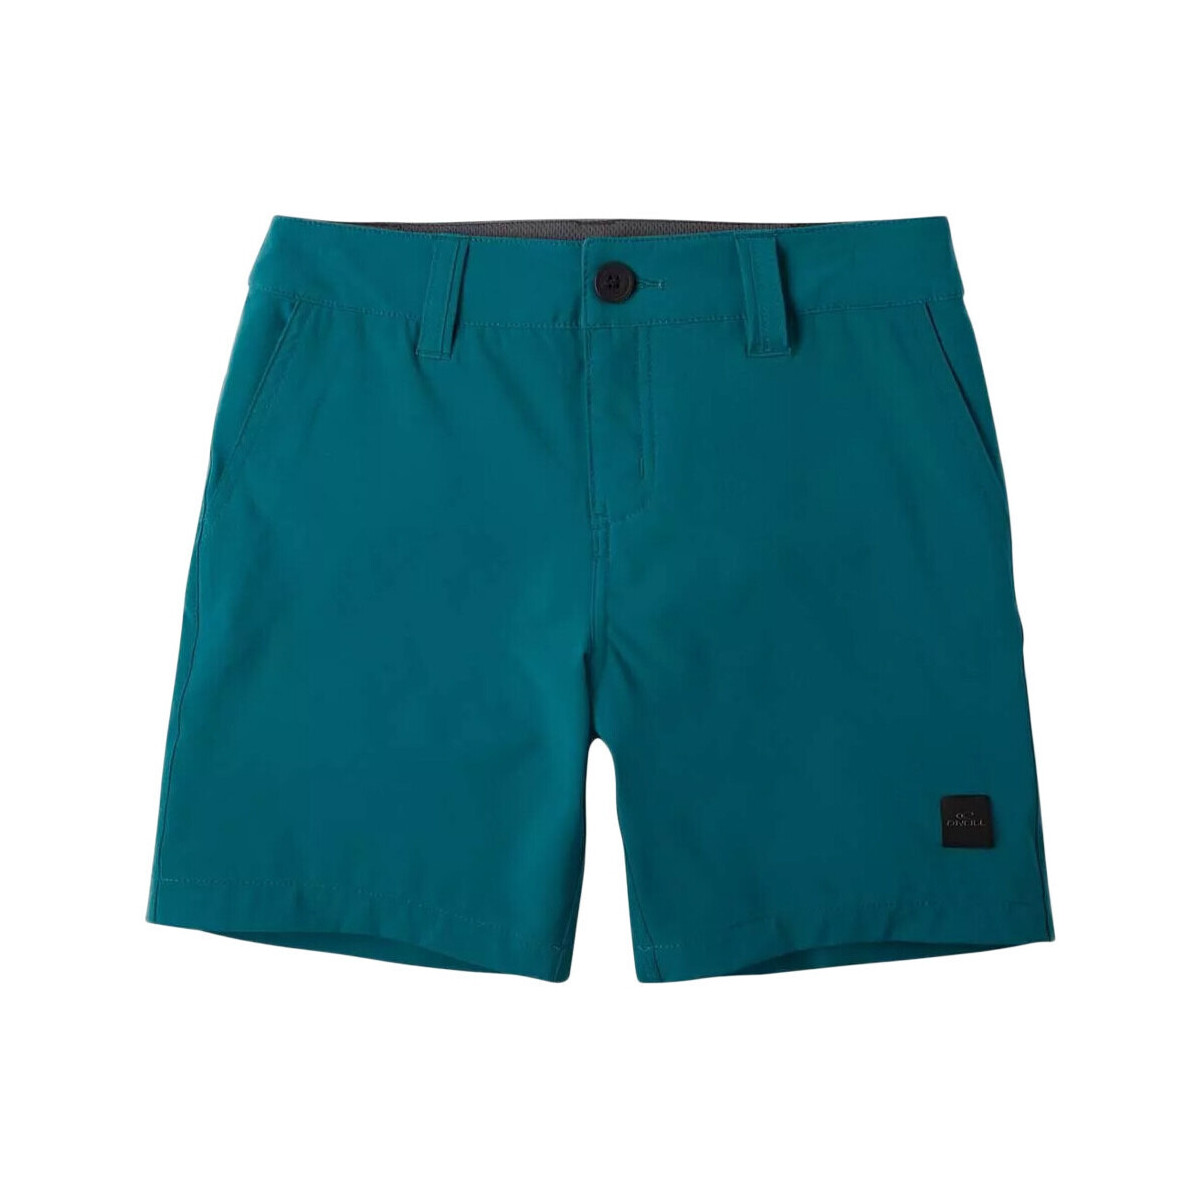 Textiel Jongens Korte broeken / Bermuda's O'neill  Blauw